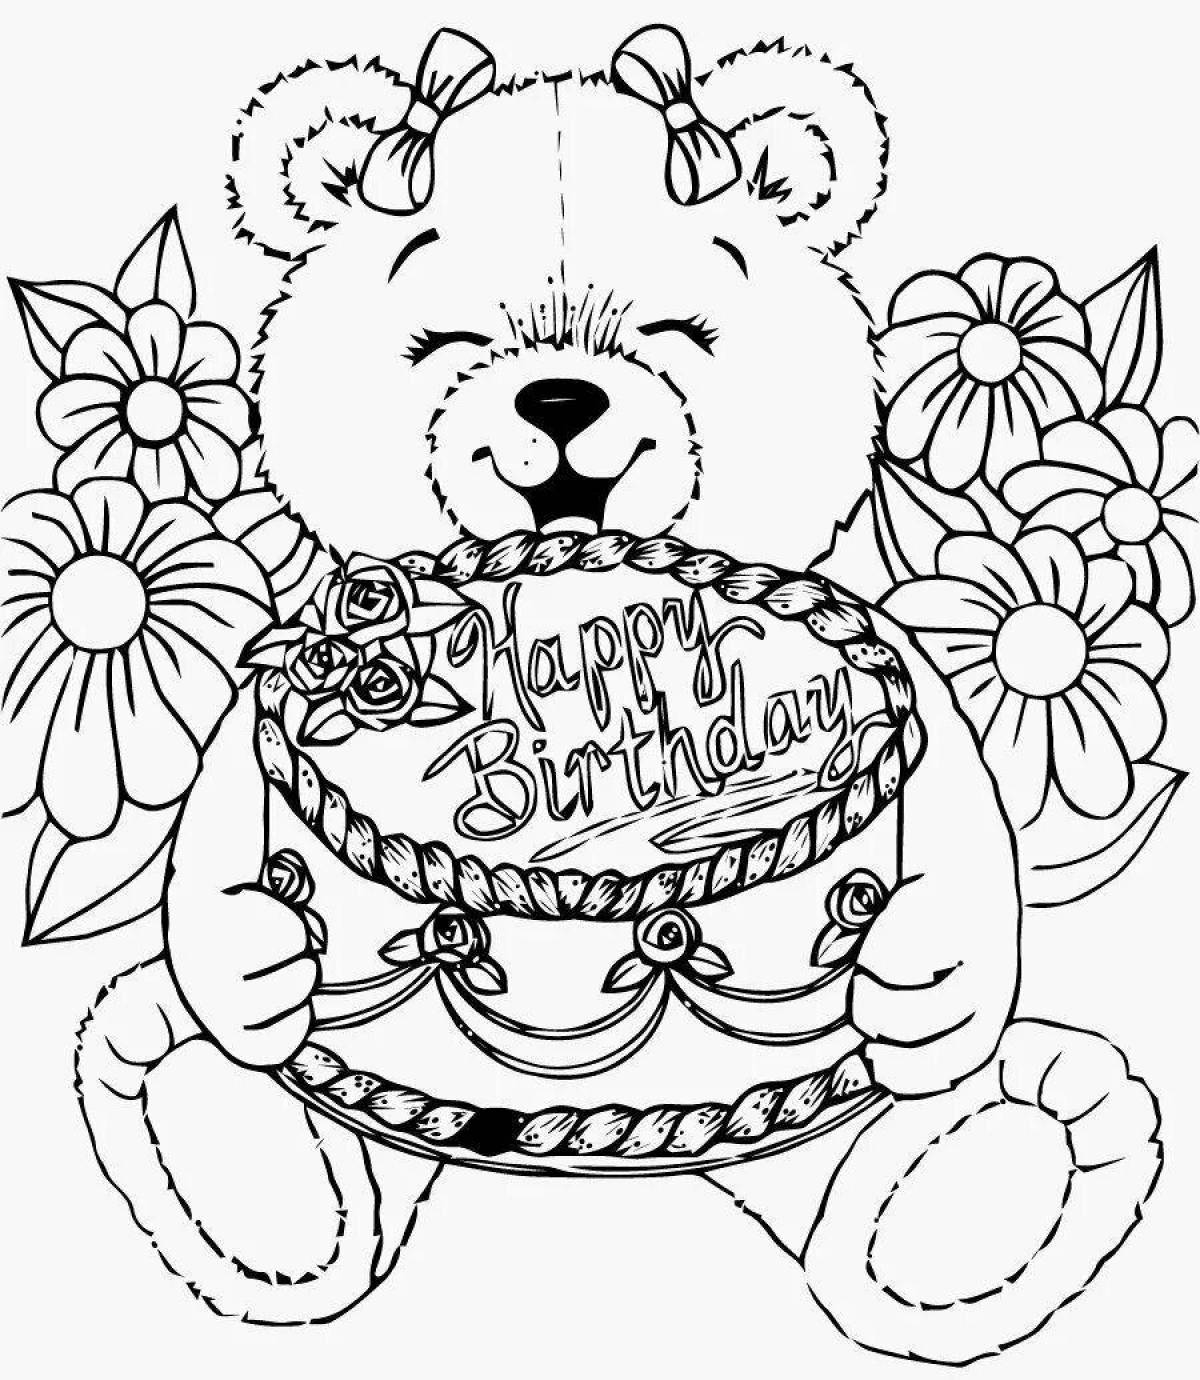 Рисунки для открытки. Раскраска "с днем рождения!". День рождения ИА раскраска. Раскраски надкень рождения. Рисунок на день рождения.